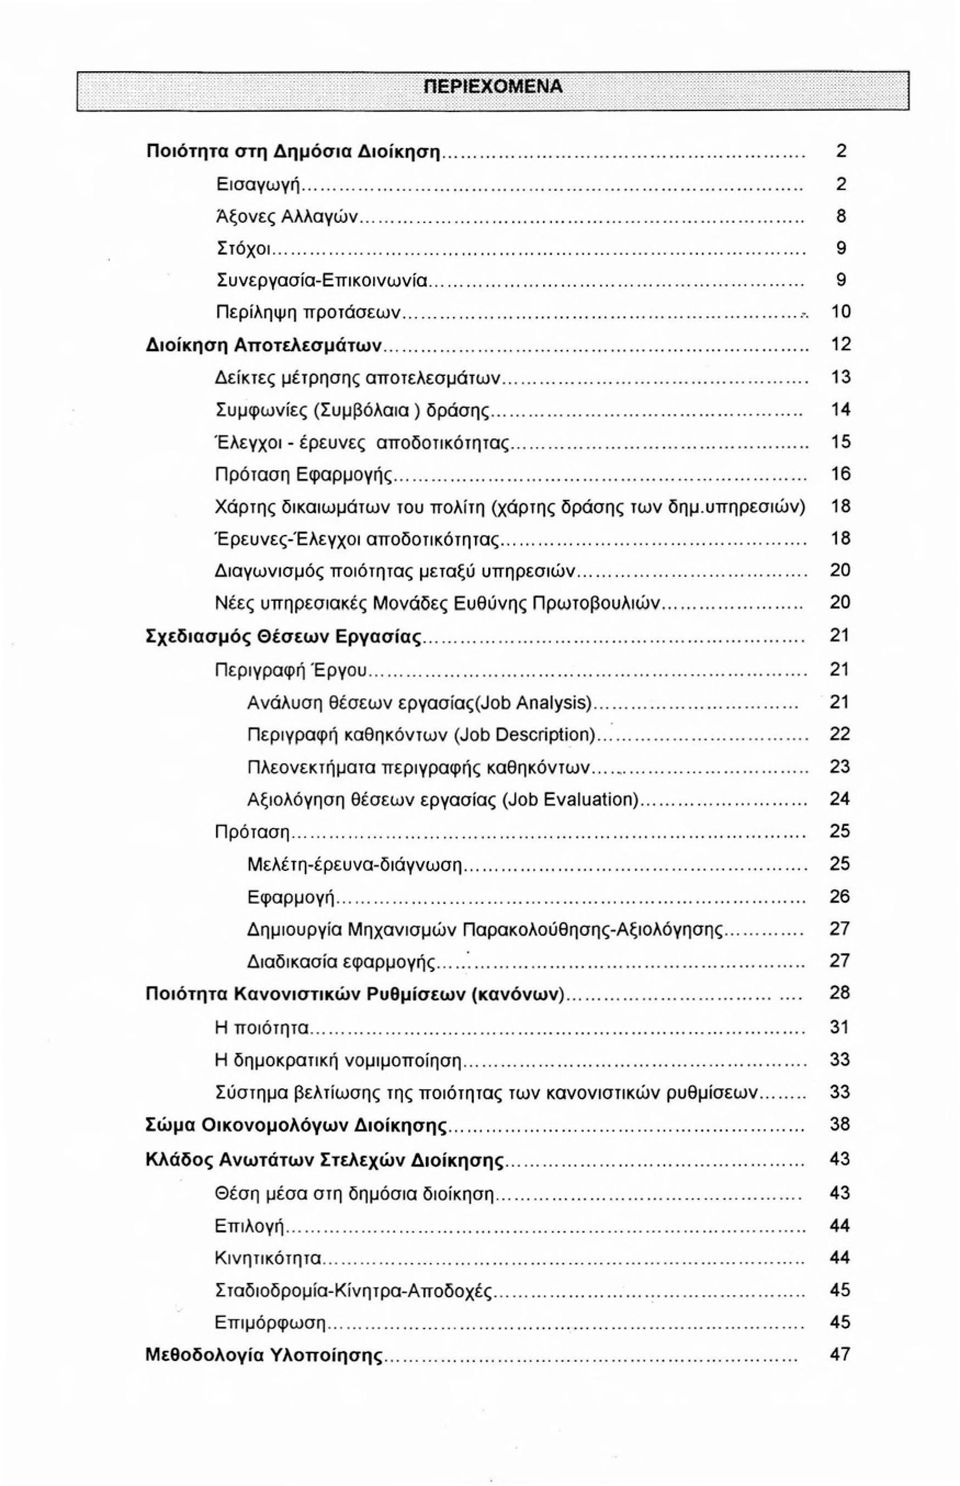 υπηρεσιών) 18 Έρευνες-'Ελεγχοι αποδοτικότητας... 18 Διαγωνισμός ποιότητας μεταξύ υπηρεσιών... 20 Νέες υπηρεσιακές Μονάδες Ευθύνης Πρωτοβουλιών... 20 Σχεδιασμός Θέσεων Εργασίας... 21 Περιγραφή Έργου.